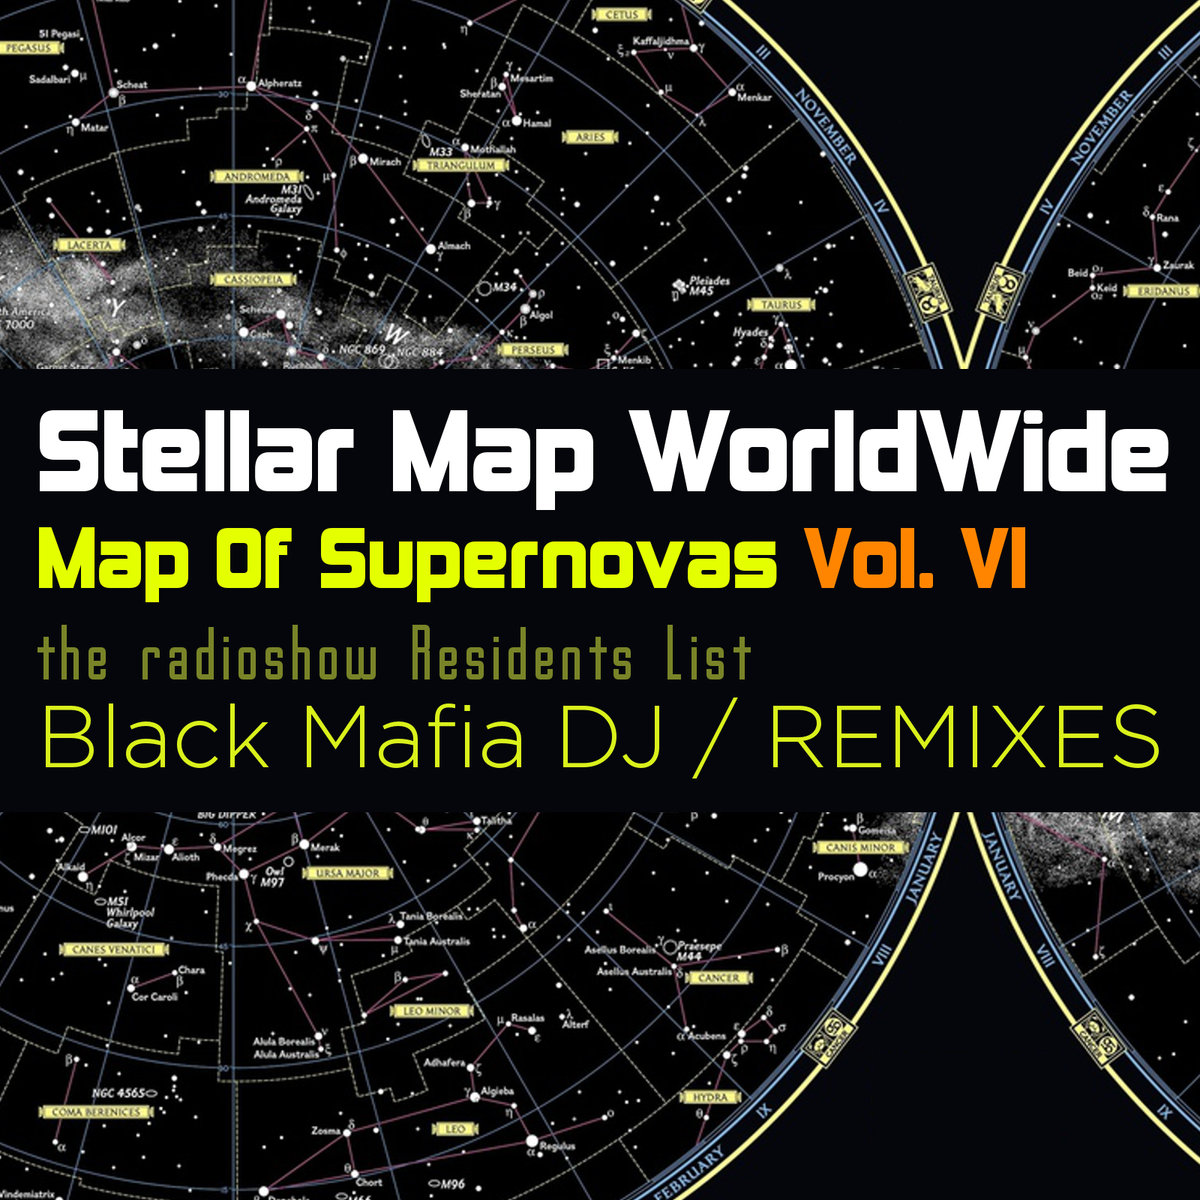 al l bo Rocket Star Black Mafia DJ Remix